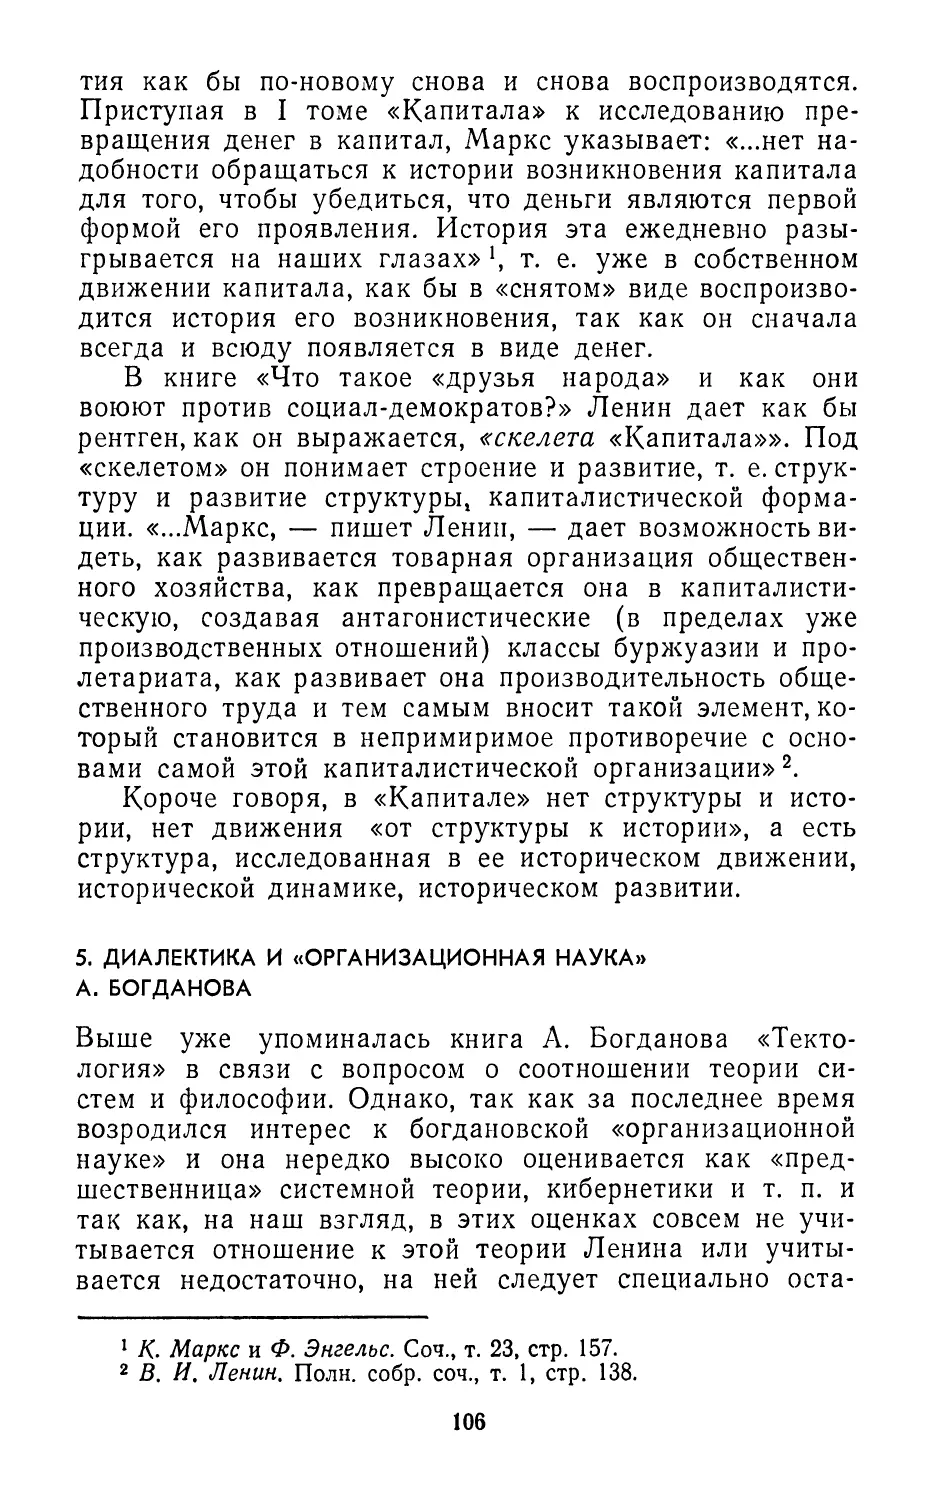 5. Диалектика и «организационная наука» А. Богданова